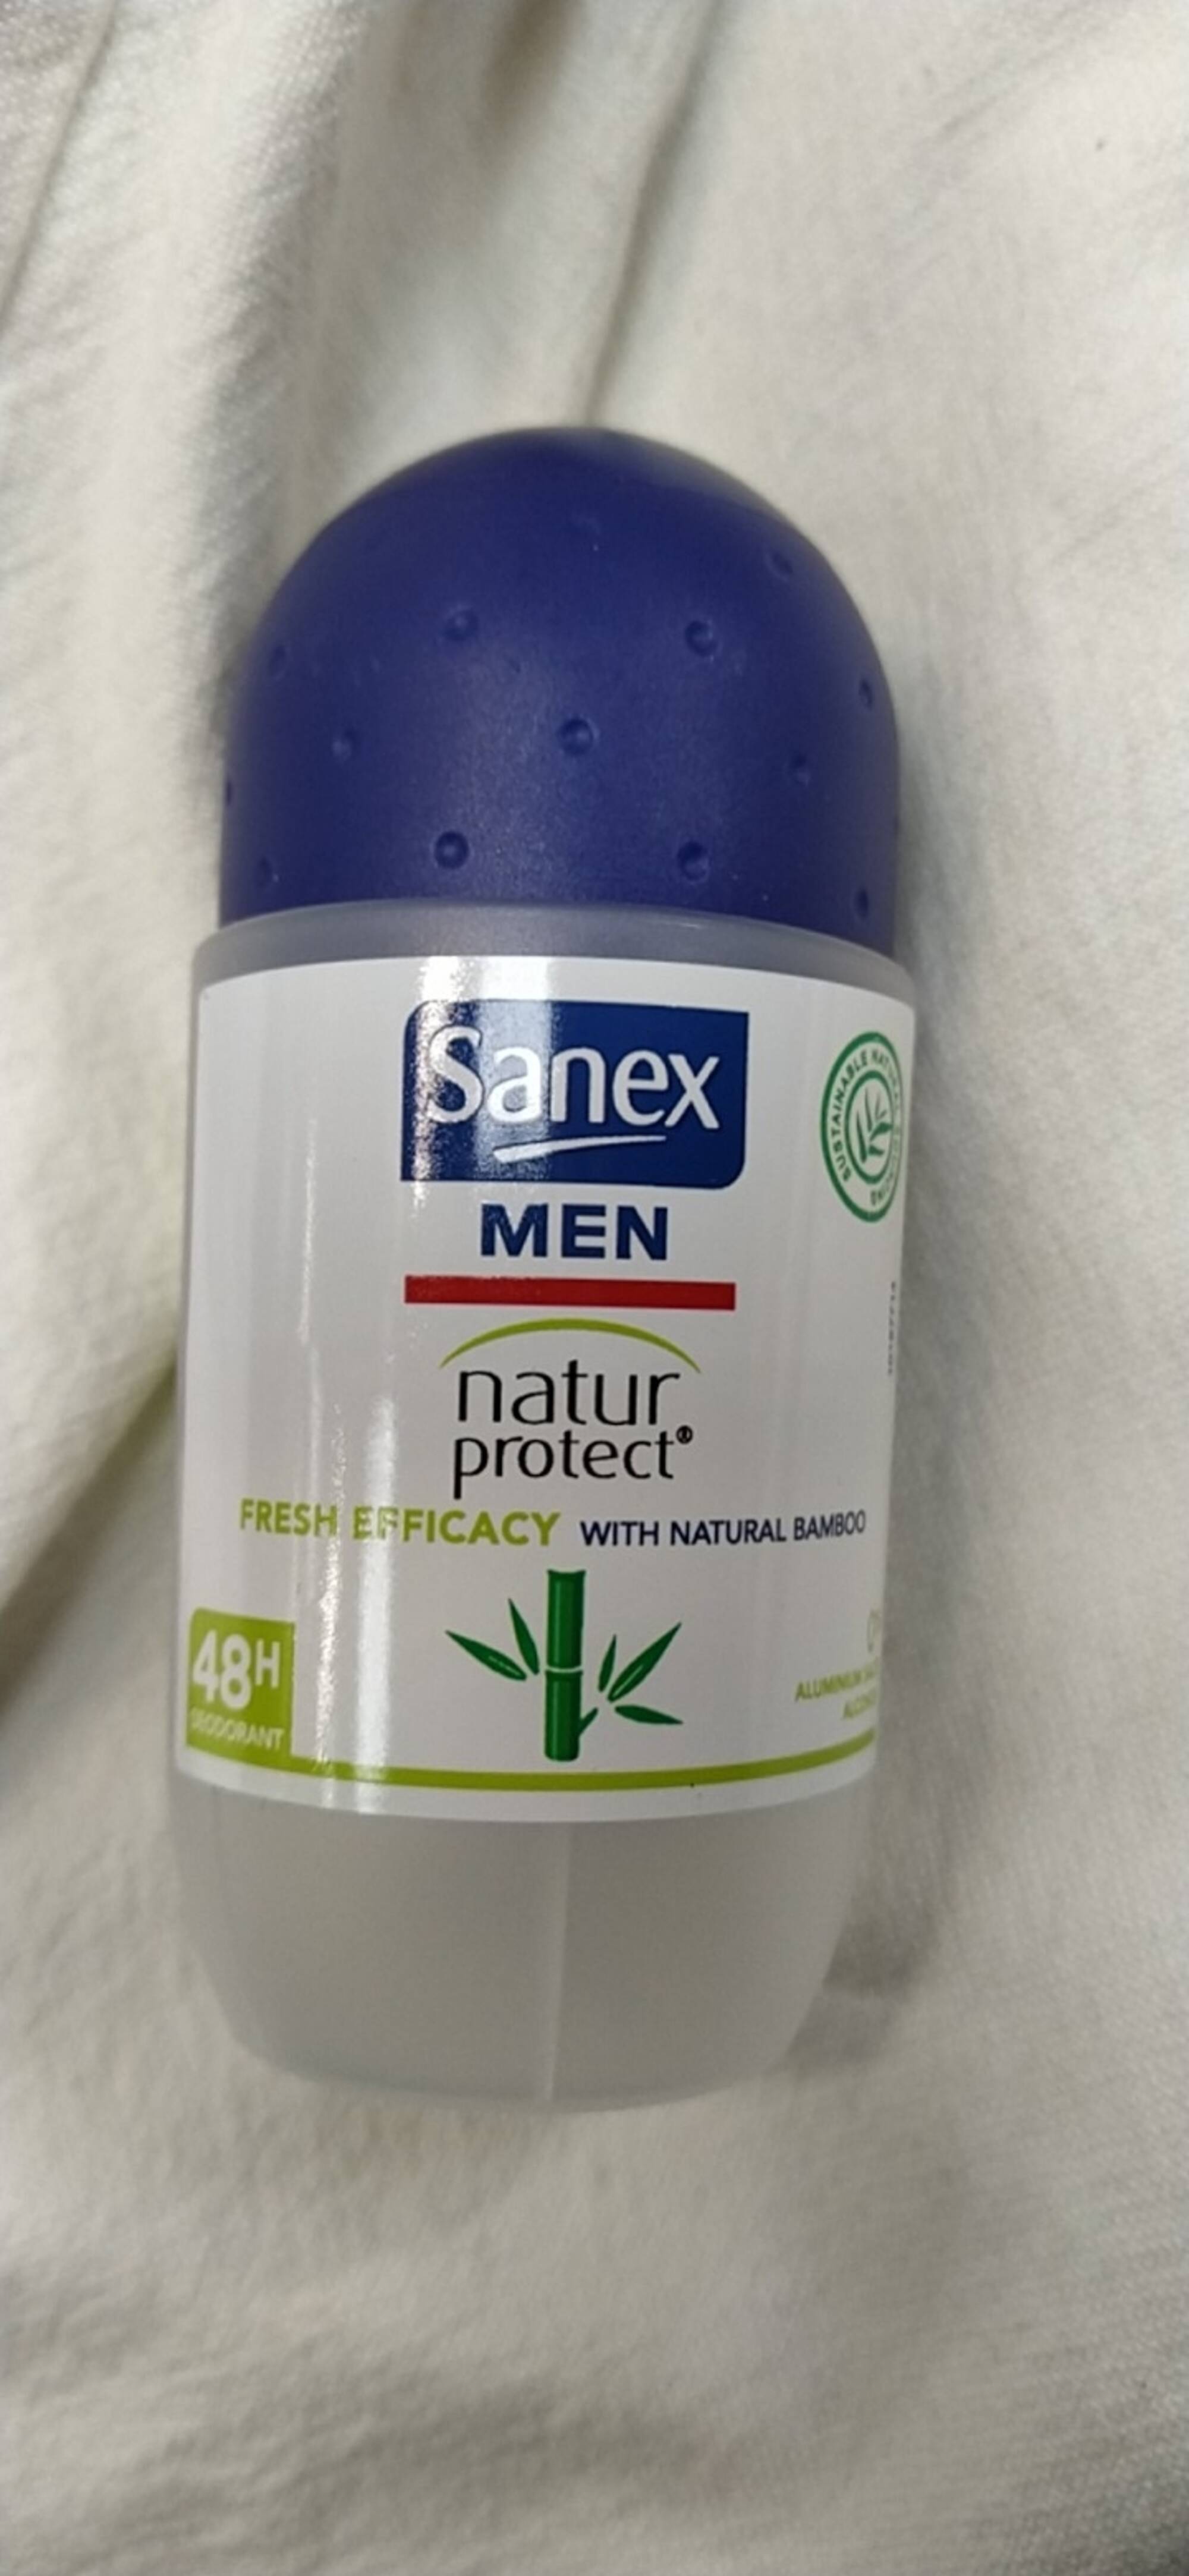 SANEX - Men Natur protect - Deodorant 48h